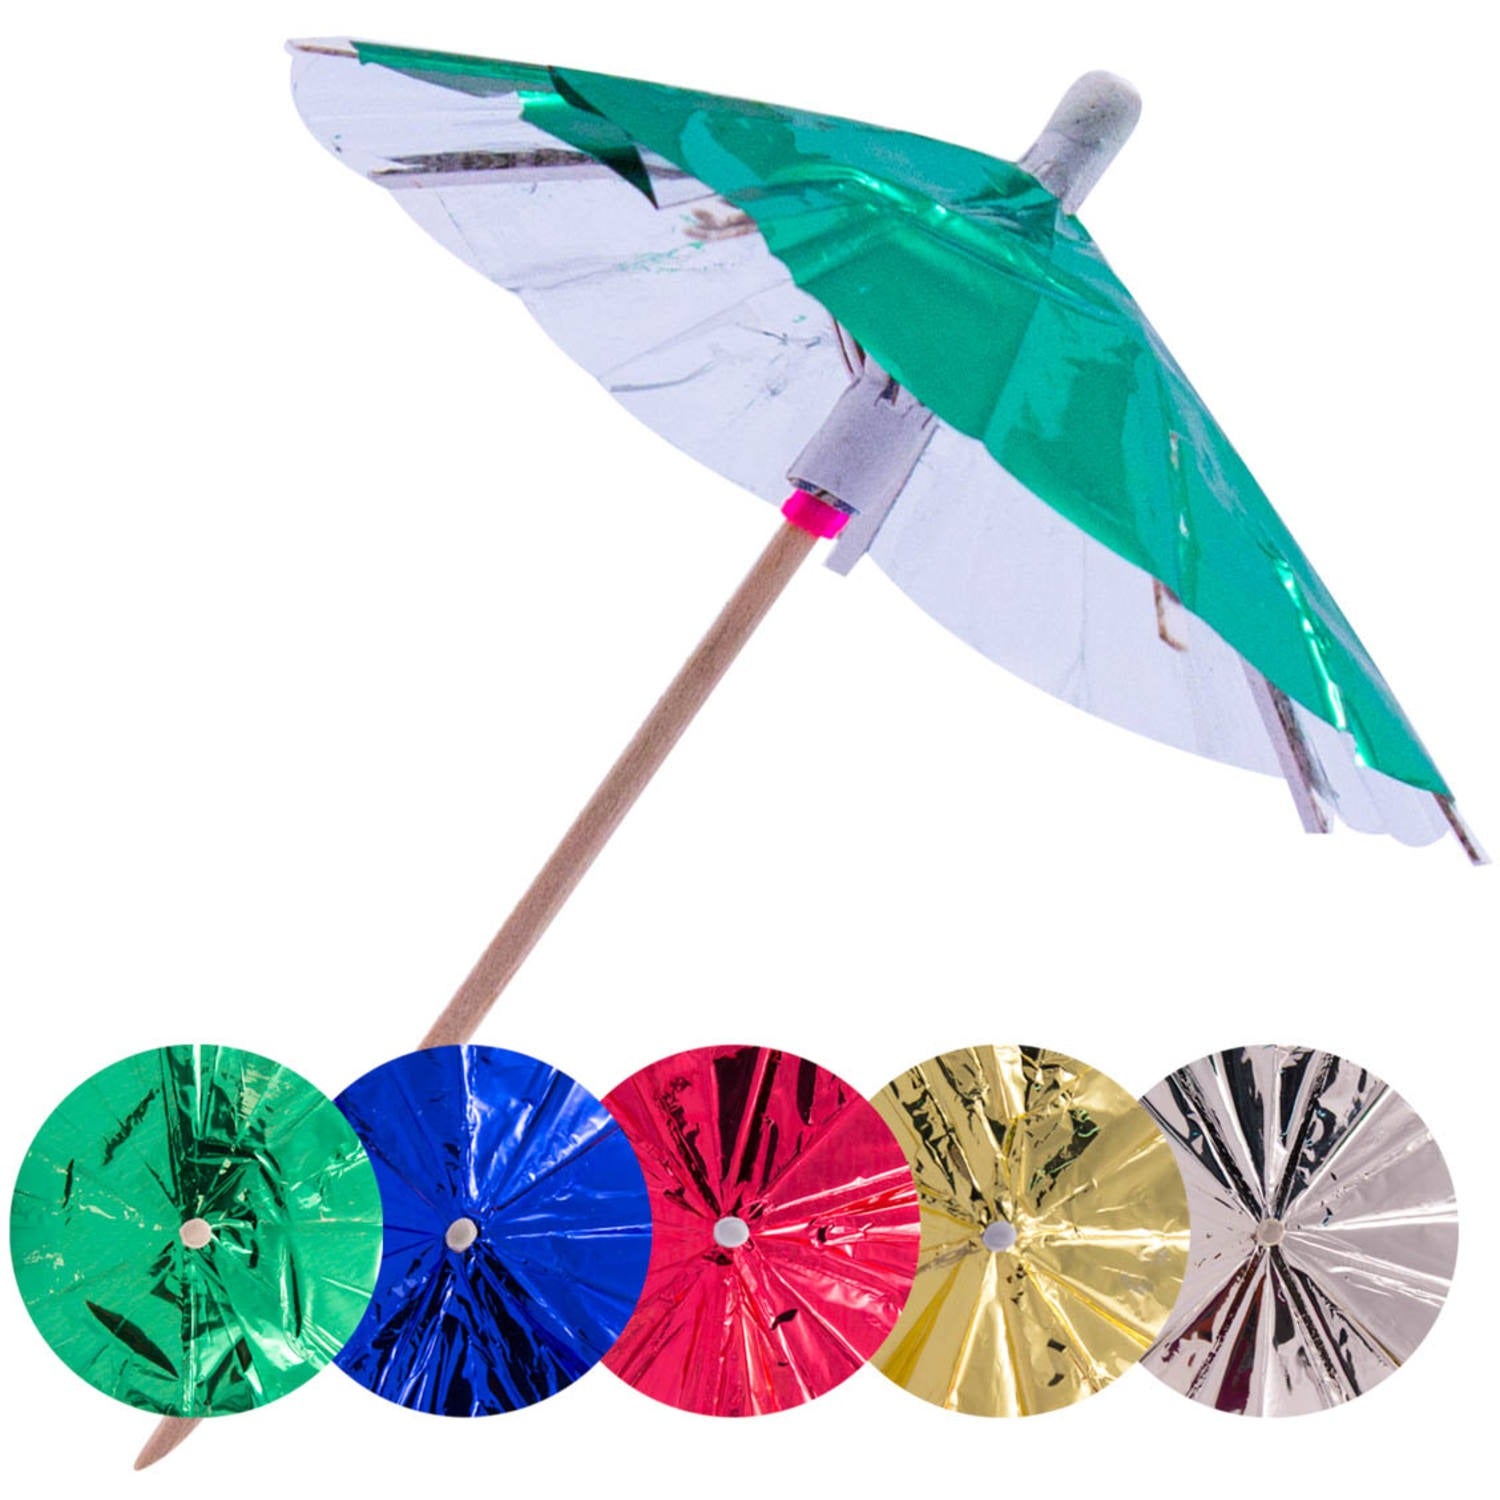 Wooden sticks, colored metallic umbrellas, 10 cm, 15 pcs